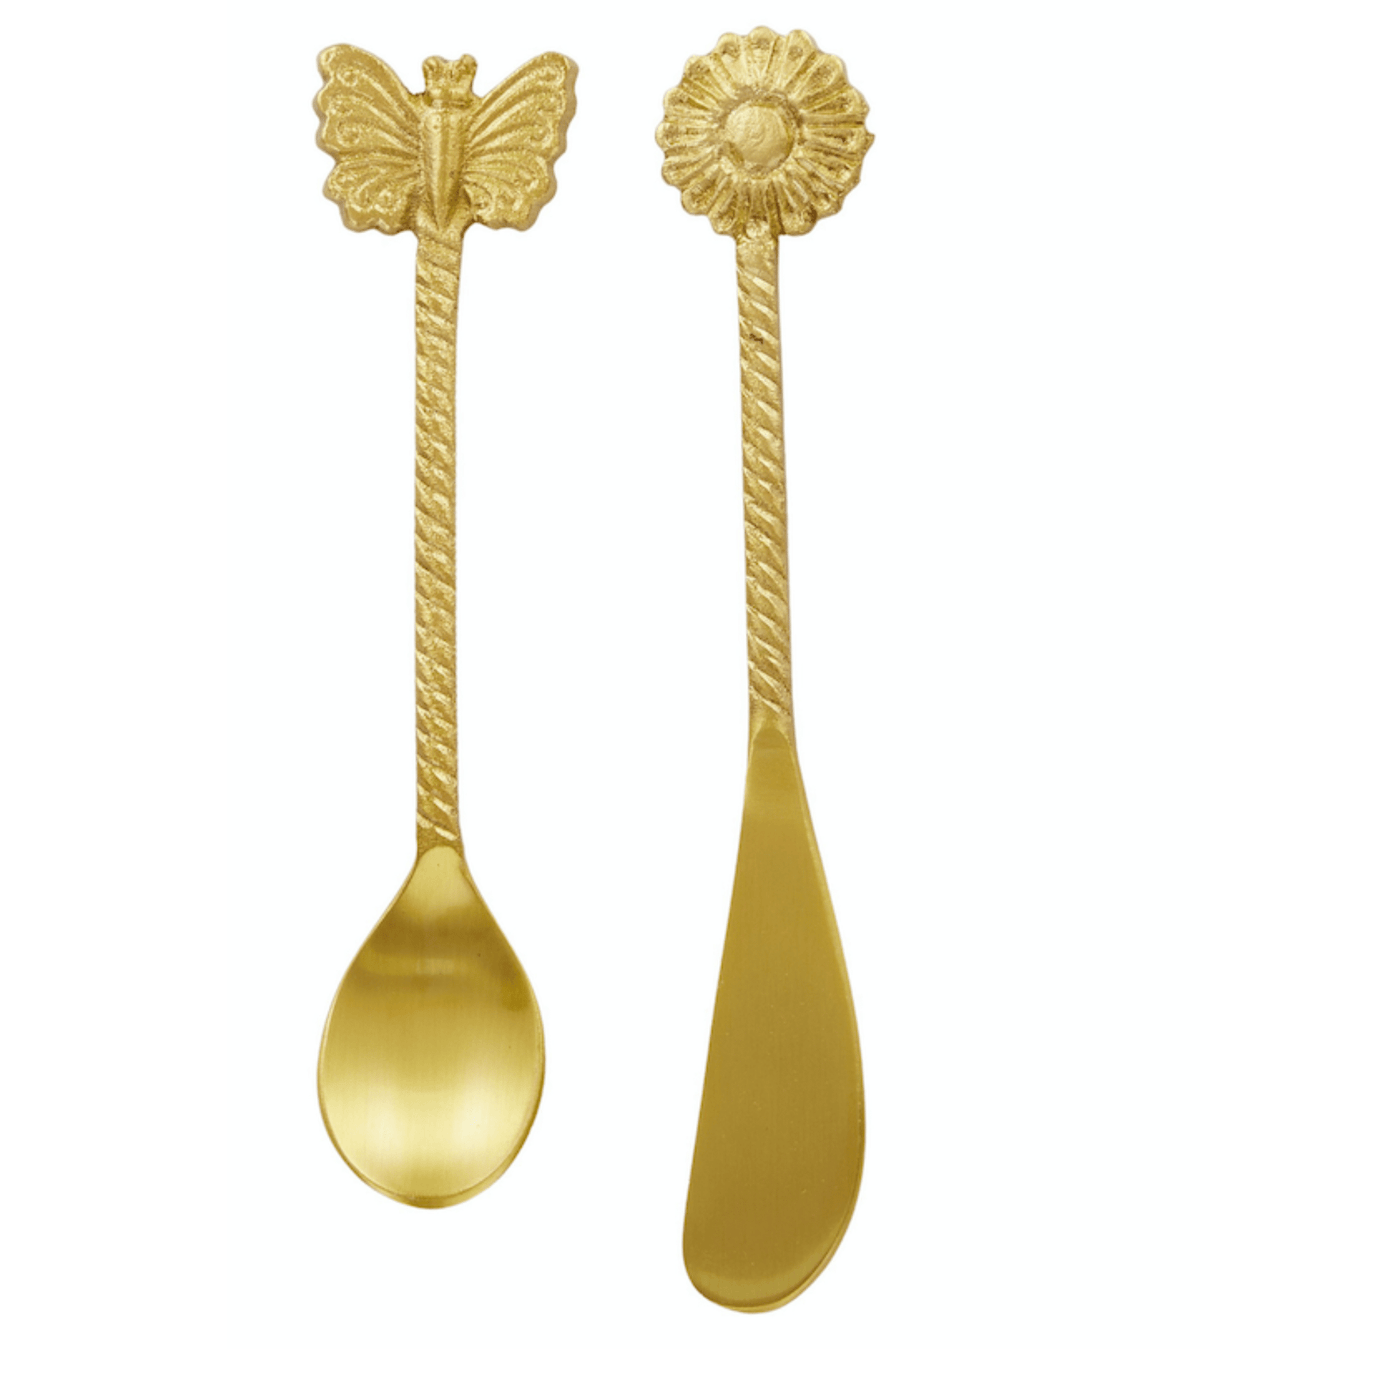 Brass Spreader/ Spoon set